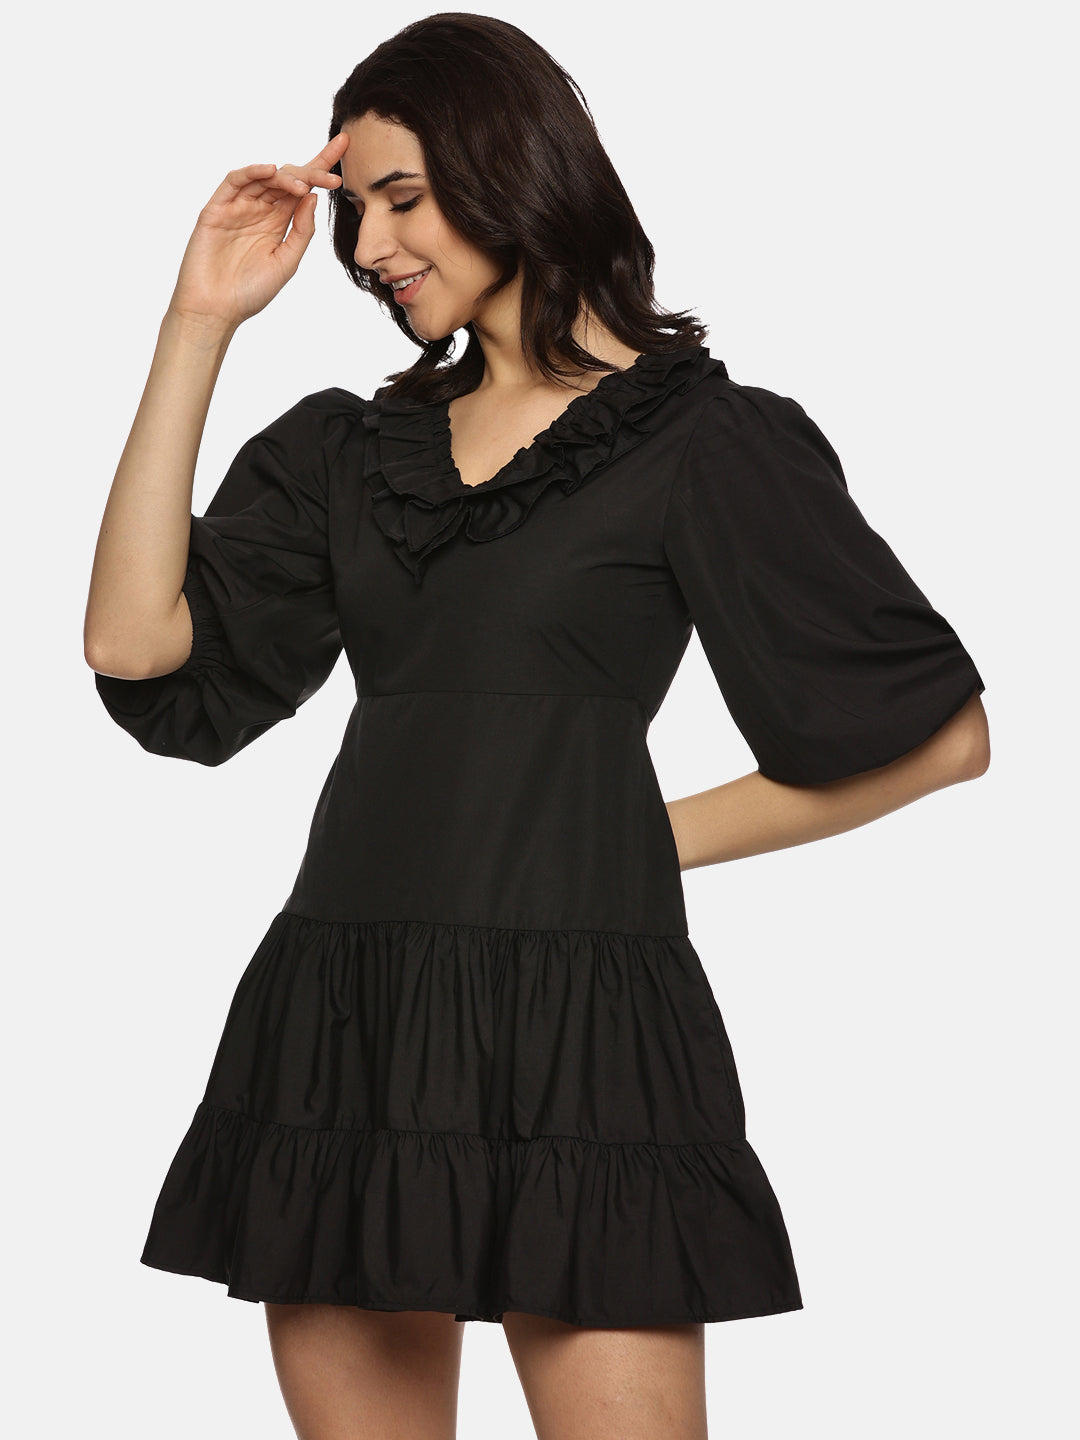 IS.U Solid Black Puff Sleeve Mini Dress